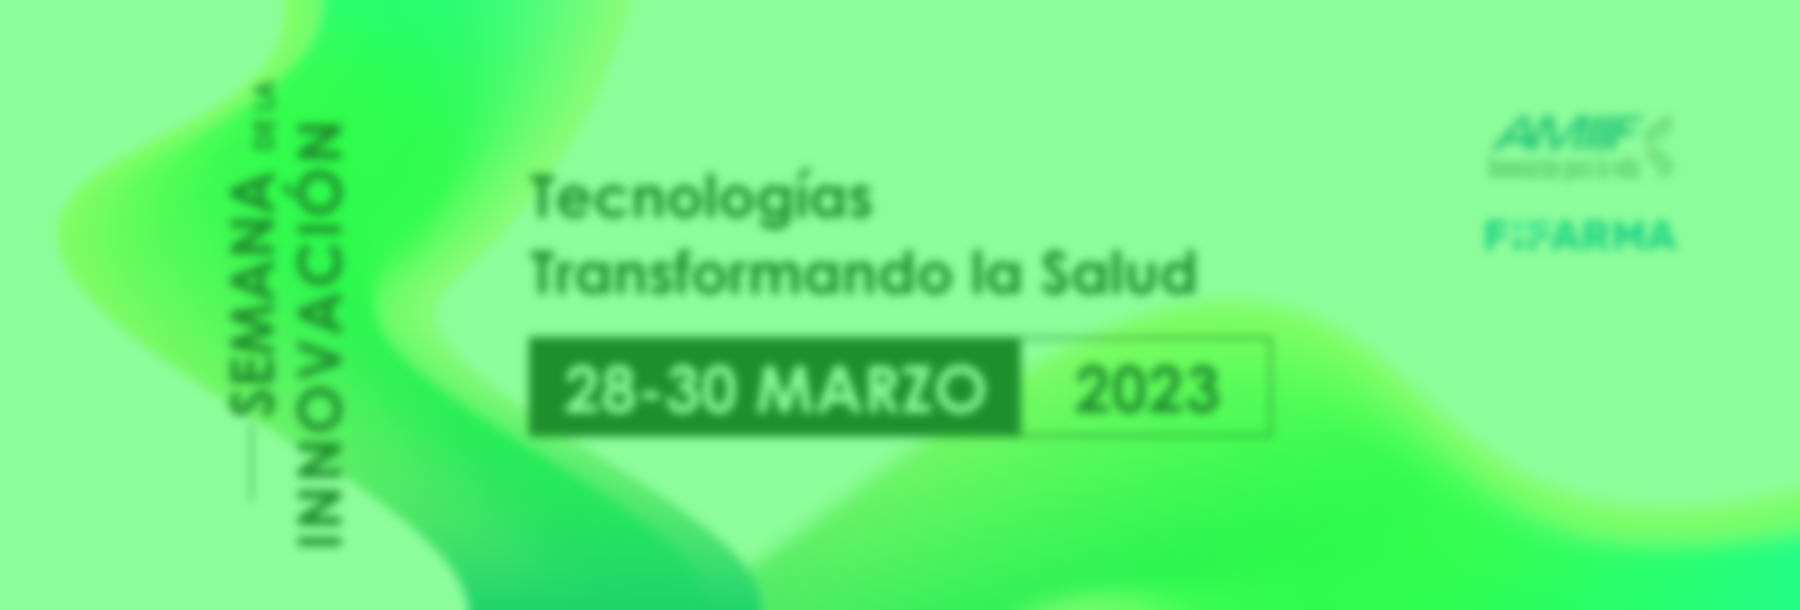 Semana de la Innovación 2023 – Innovación y Tecnología: indispensables para la transformación y el acceso equitativo a la salud